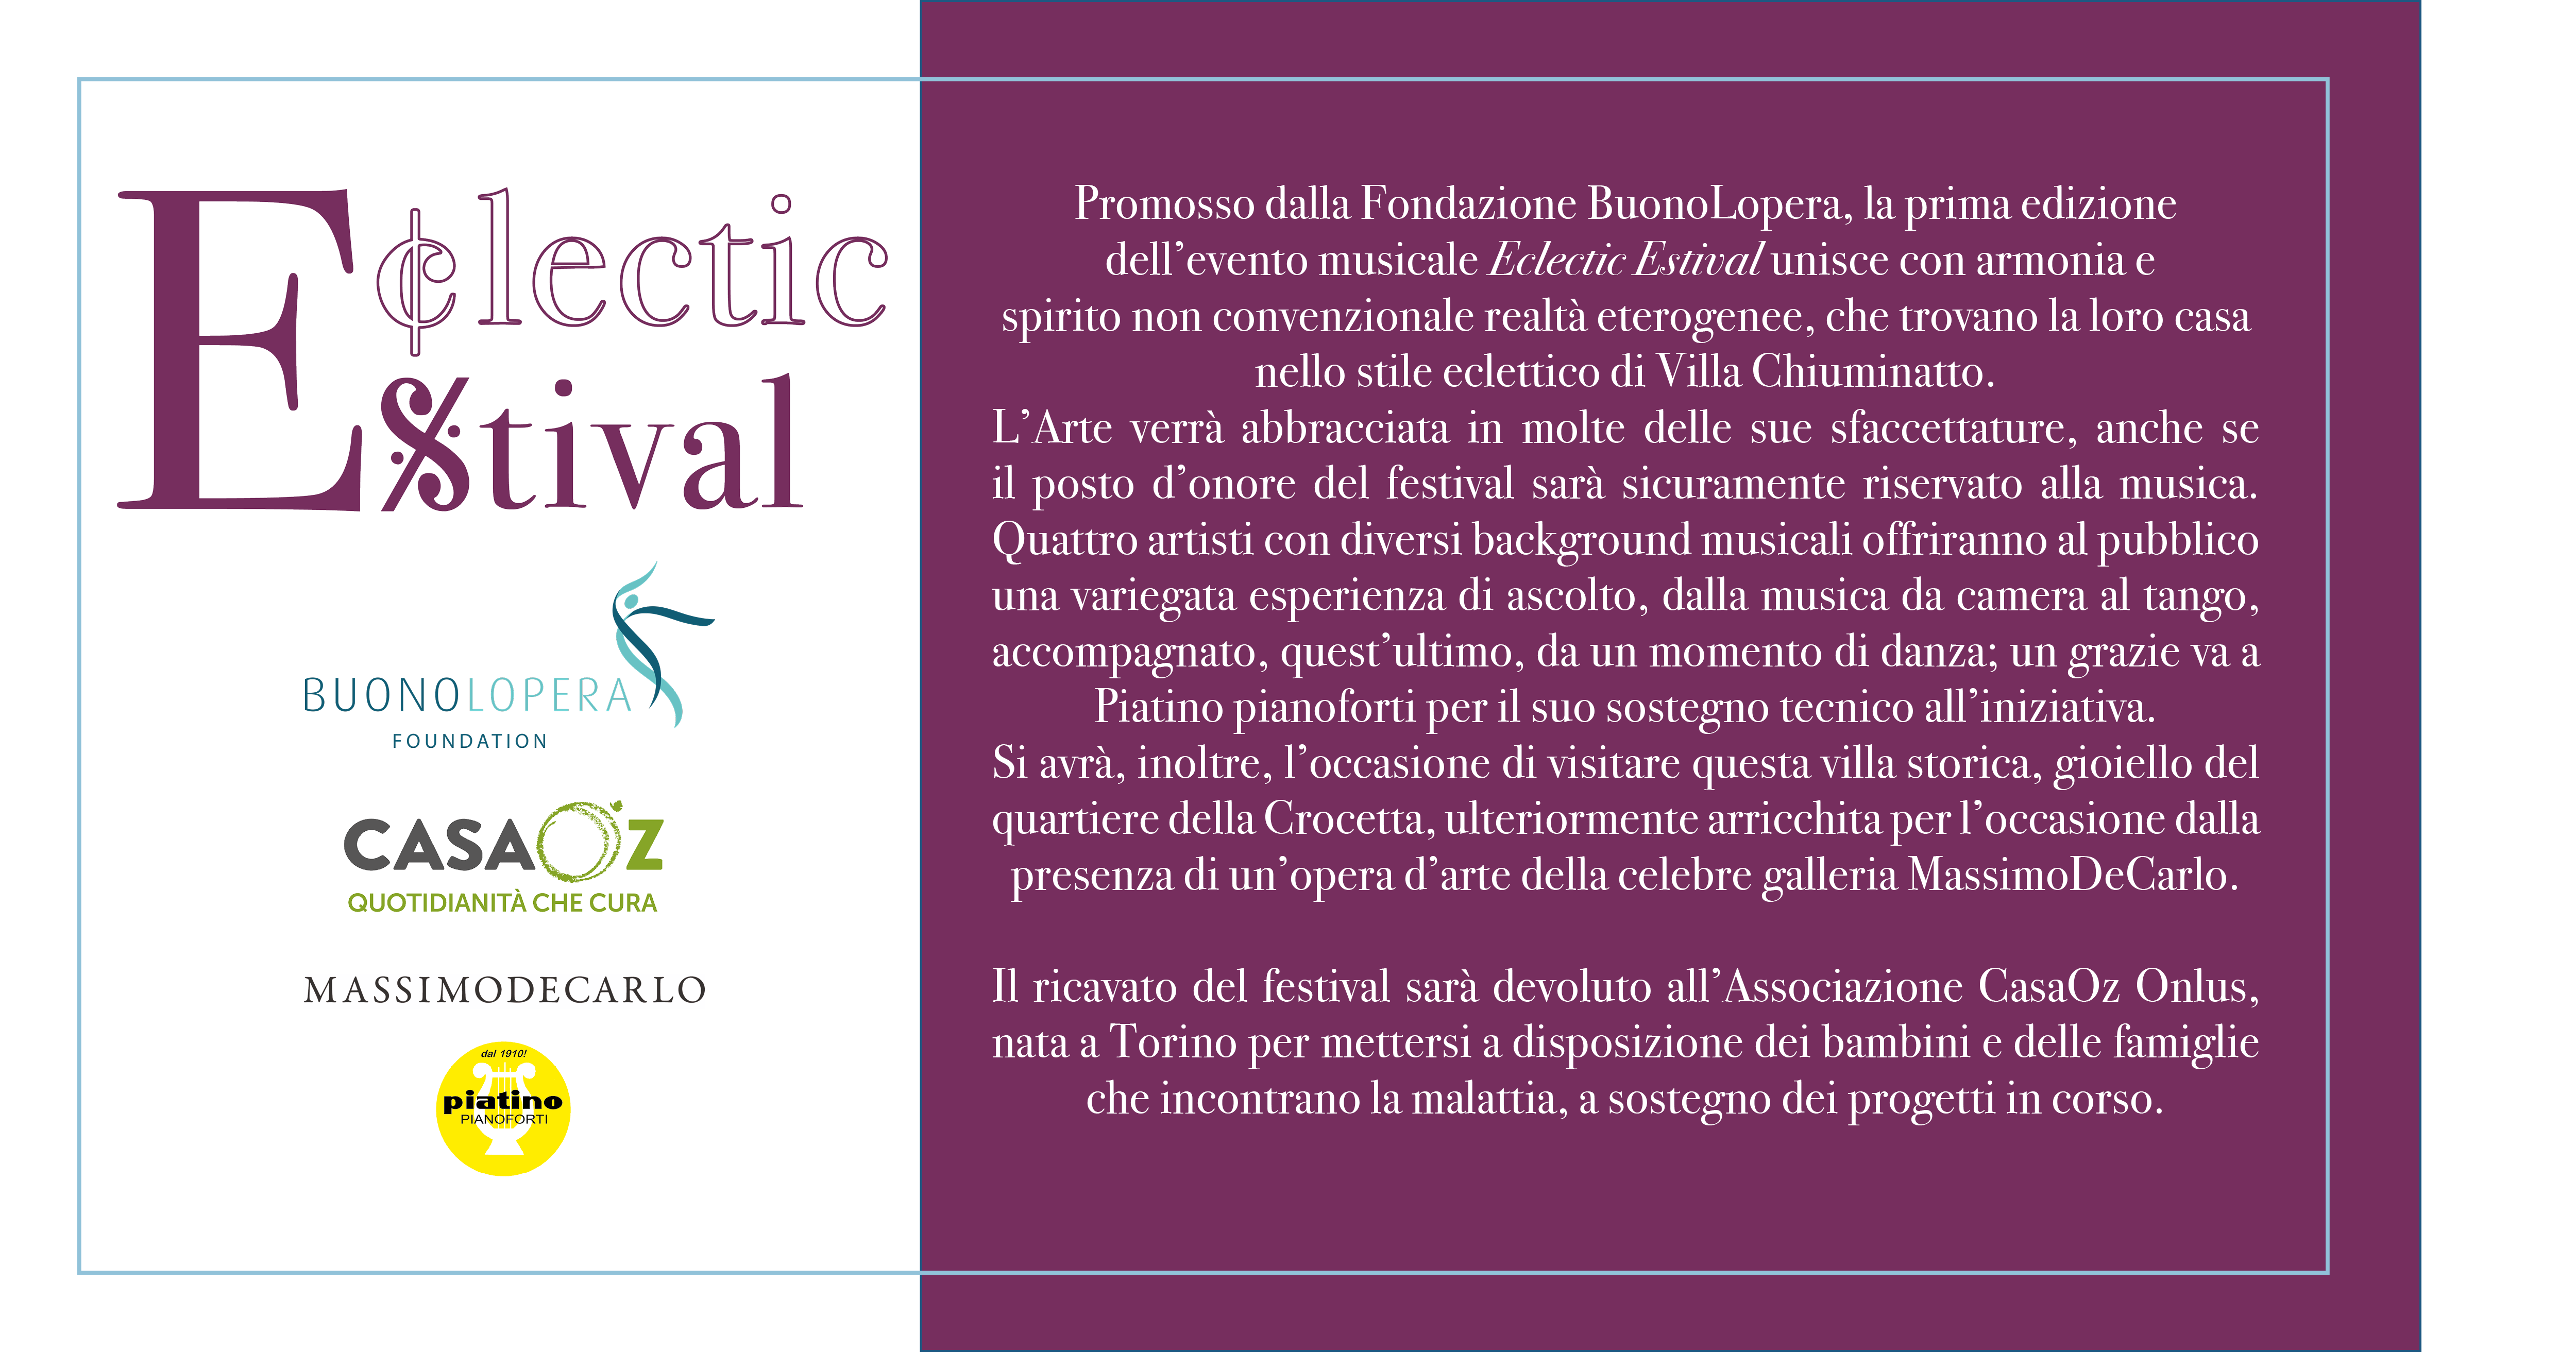 Eclectic Estival - I Edizione-Fondazione BuonoLopera